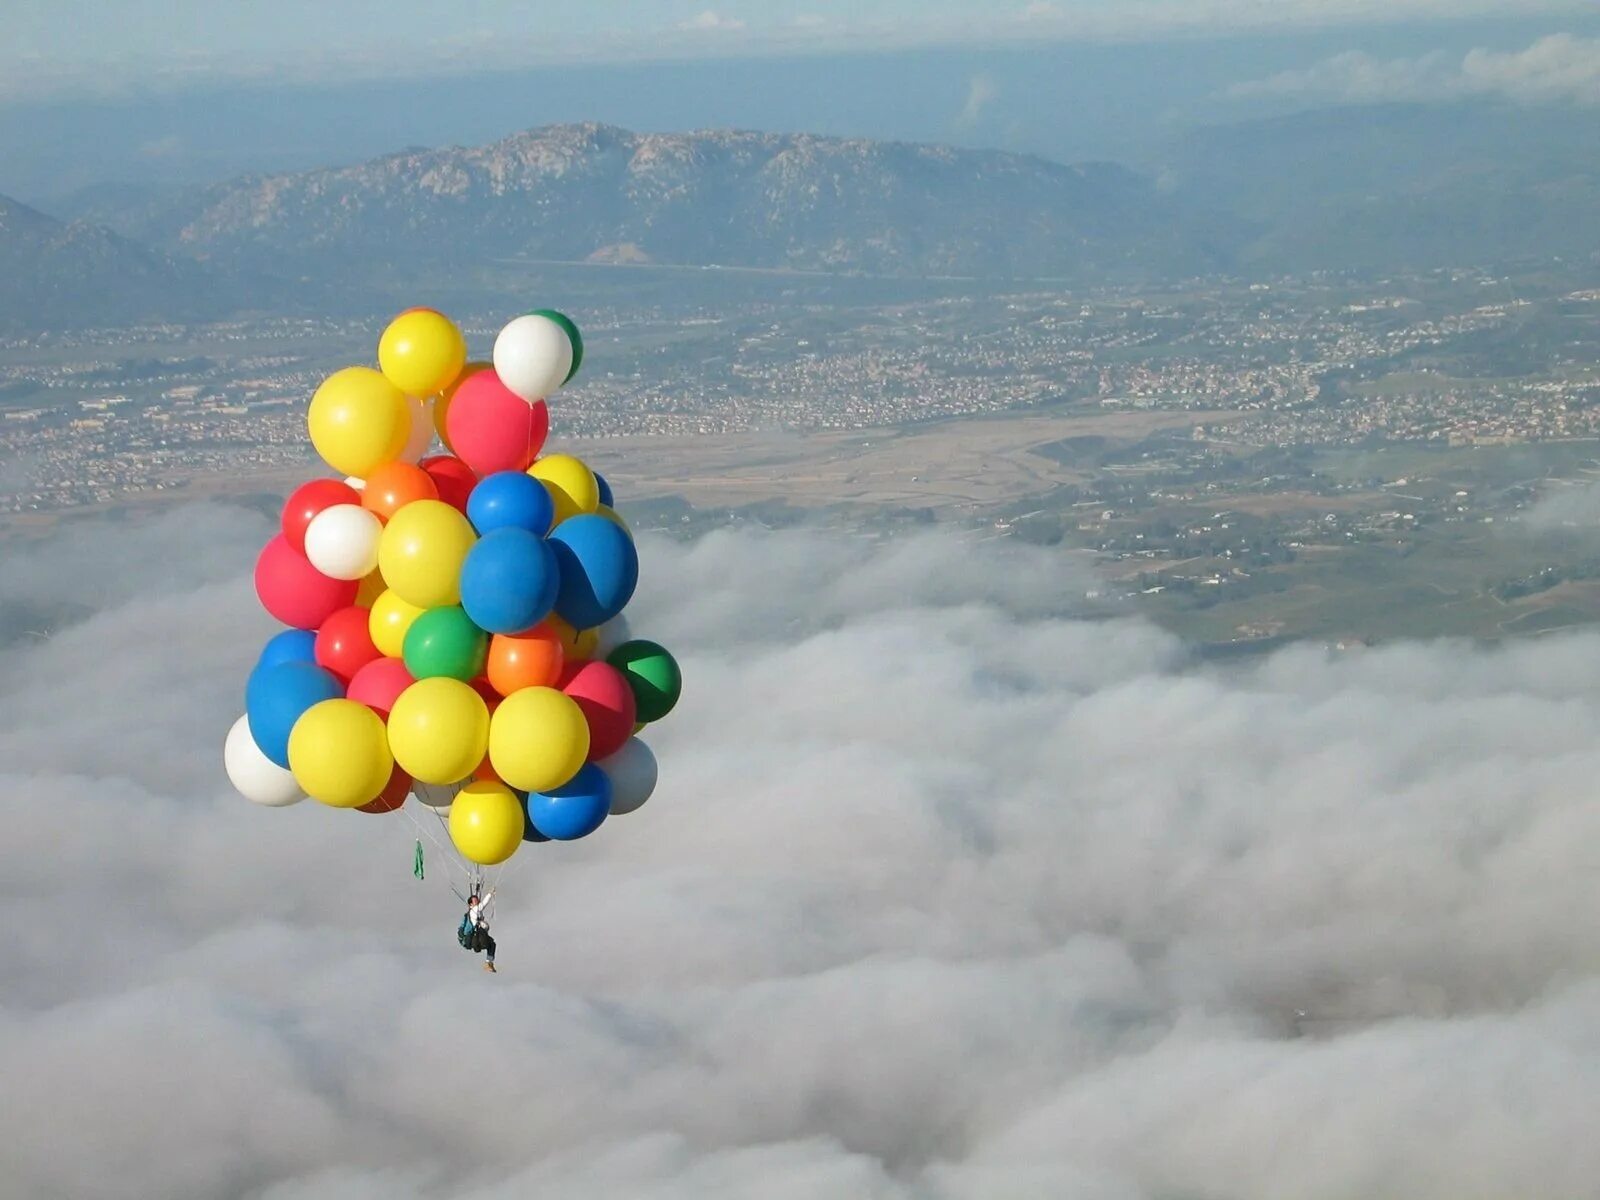 Выпускать в небо воздушные шары с гелием. Ларри Уолтерс на воздушных шарах. Виталий Куликов полет на воздушных шариках. Улетел на воздушных шарах. Шары воздушные в воздухе.